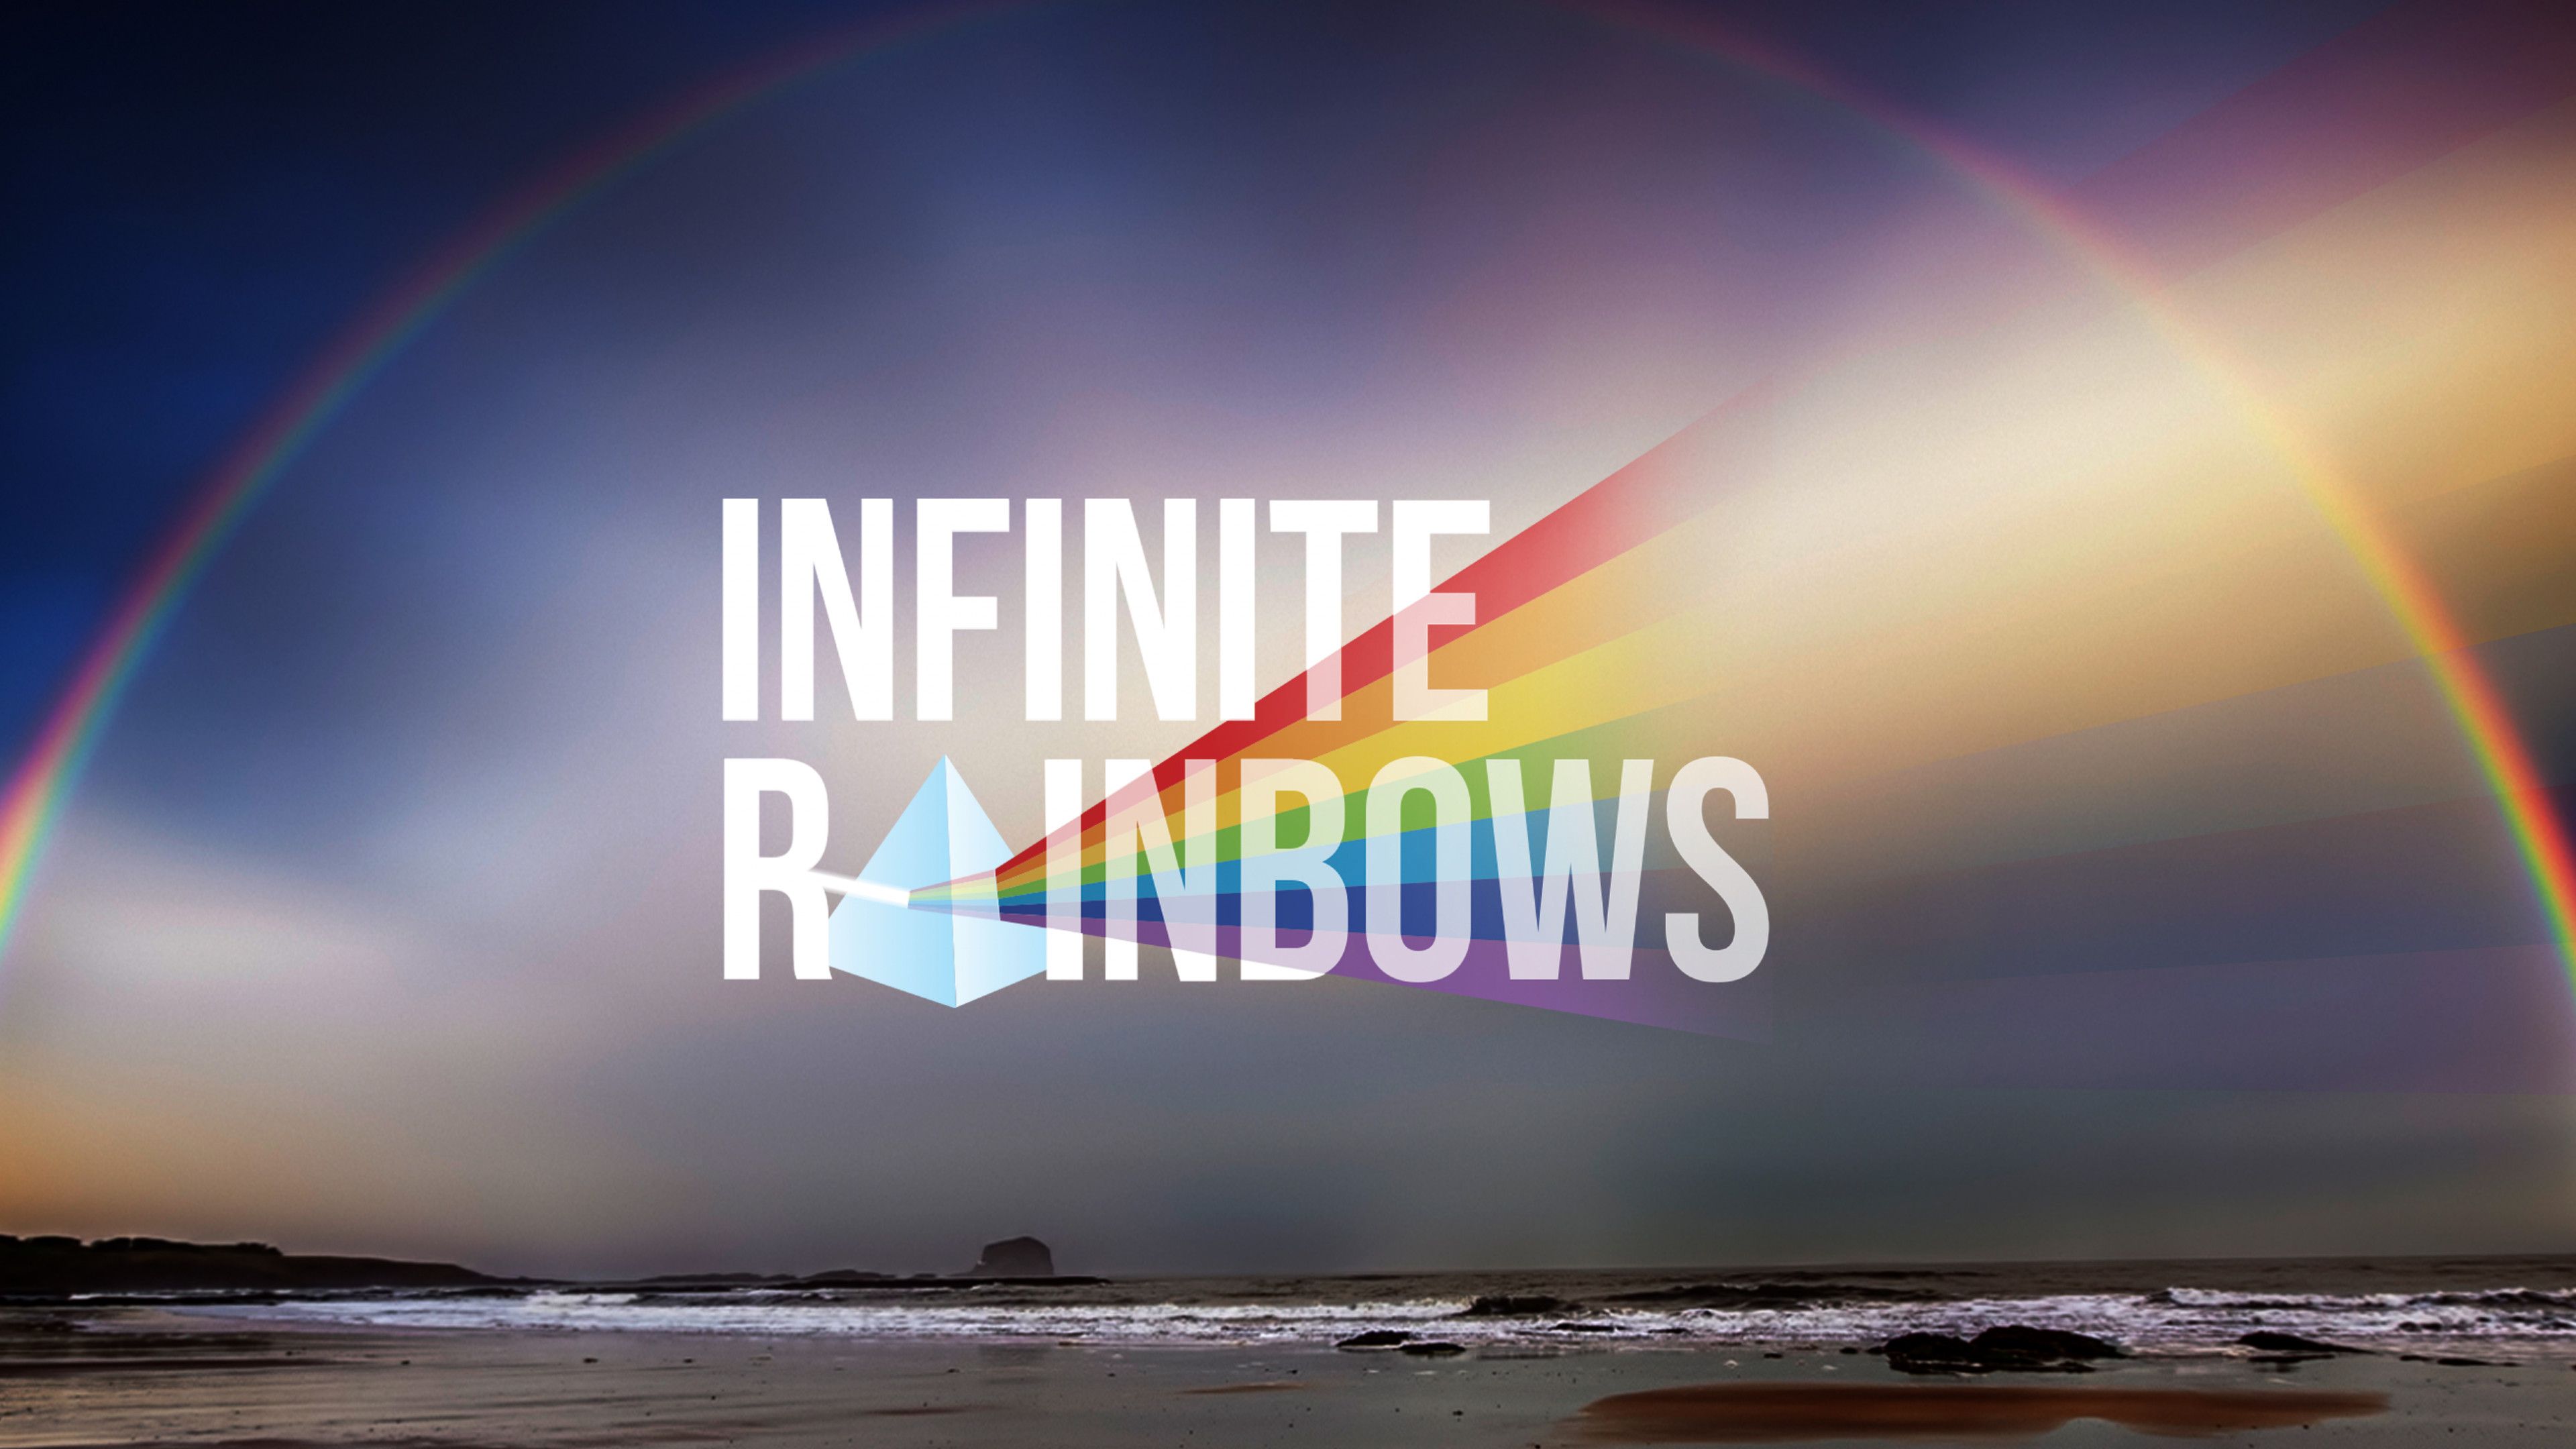 Infinite Rainbows